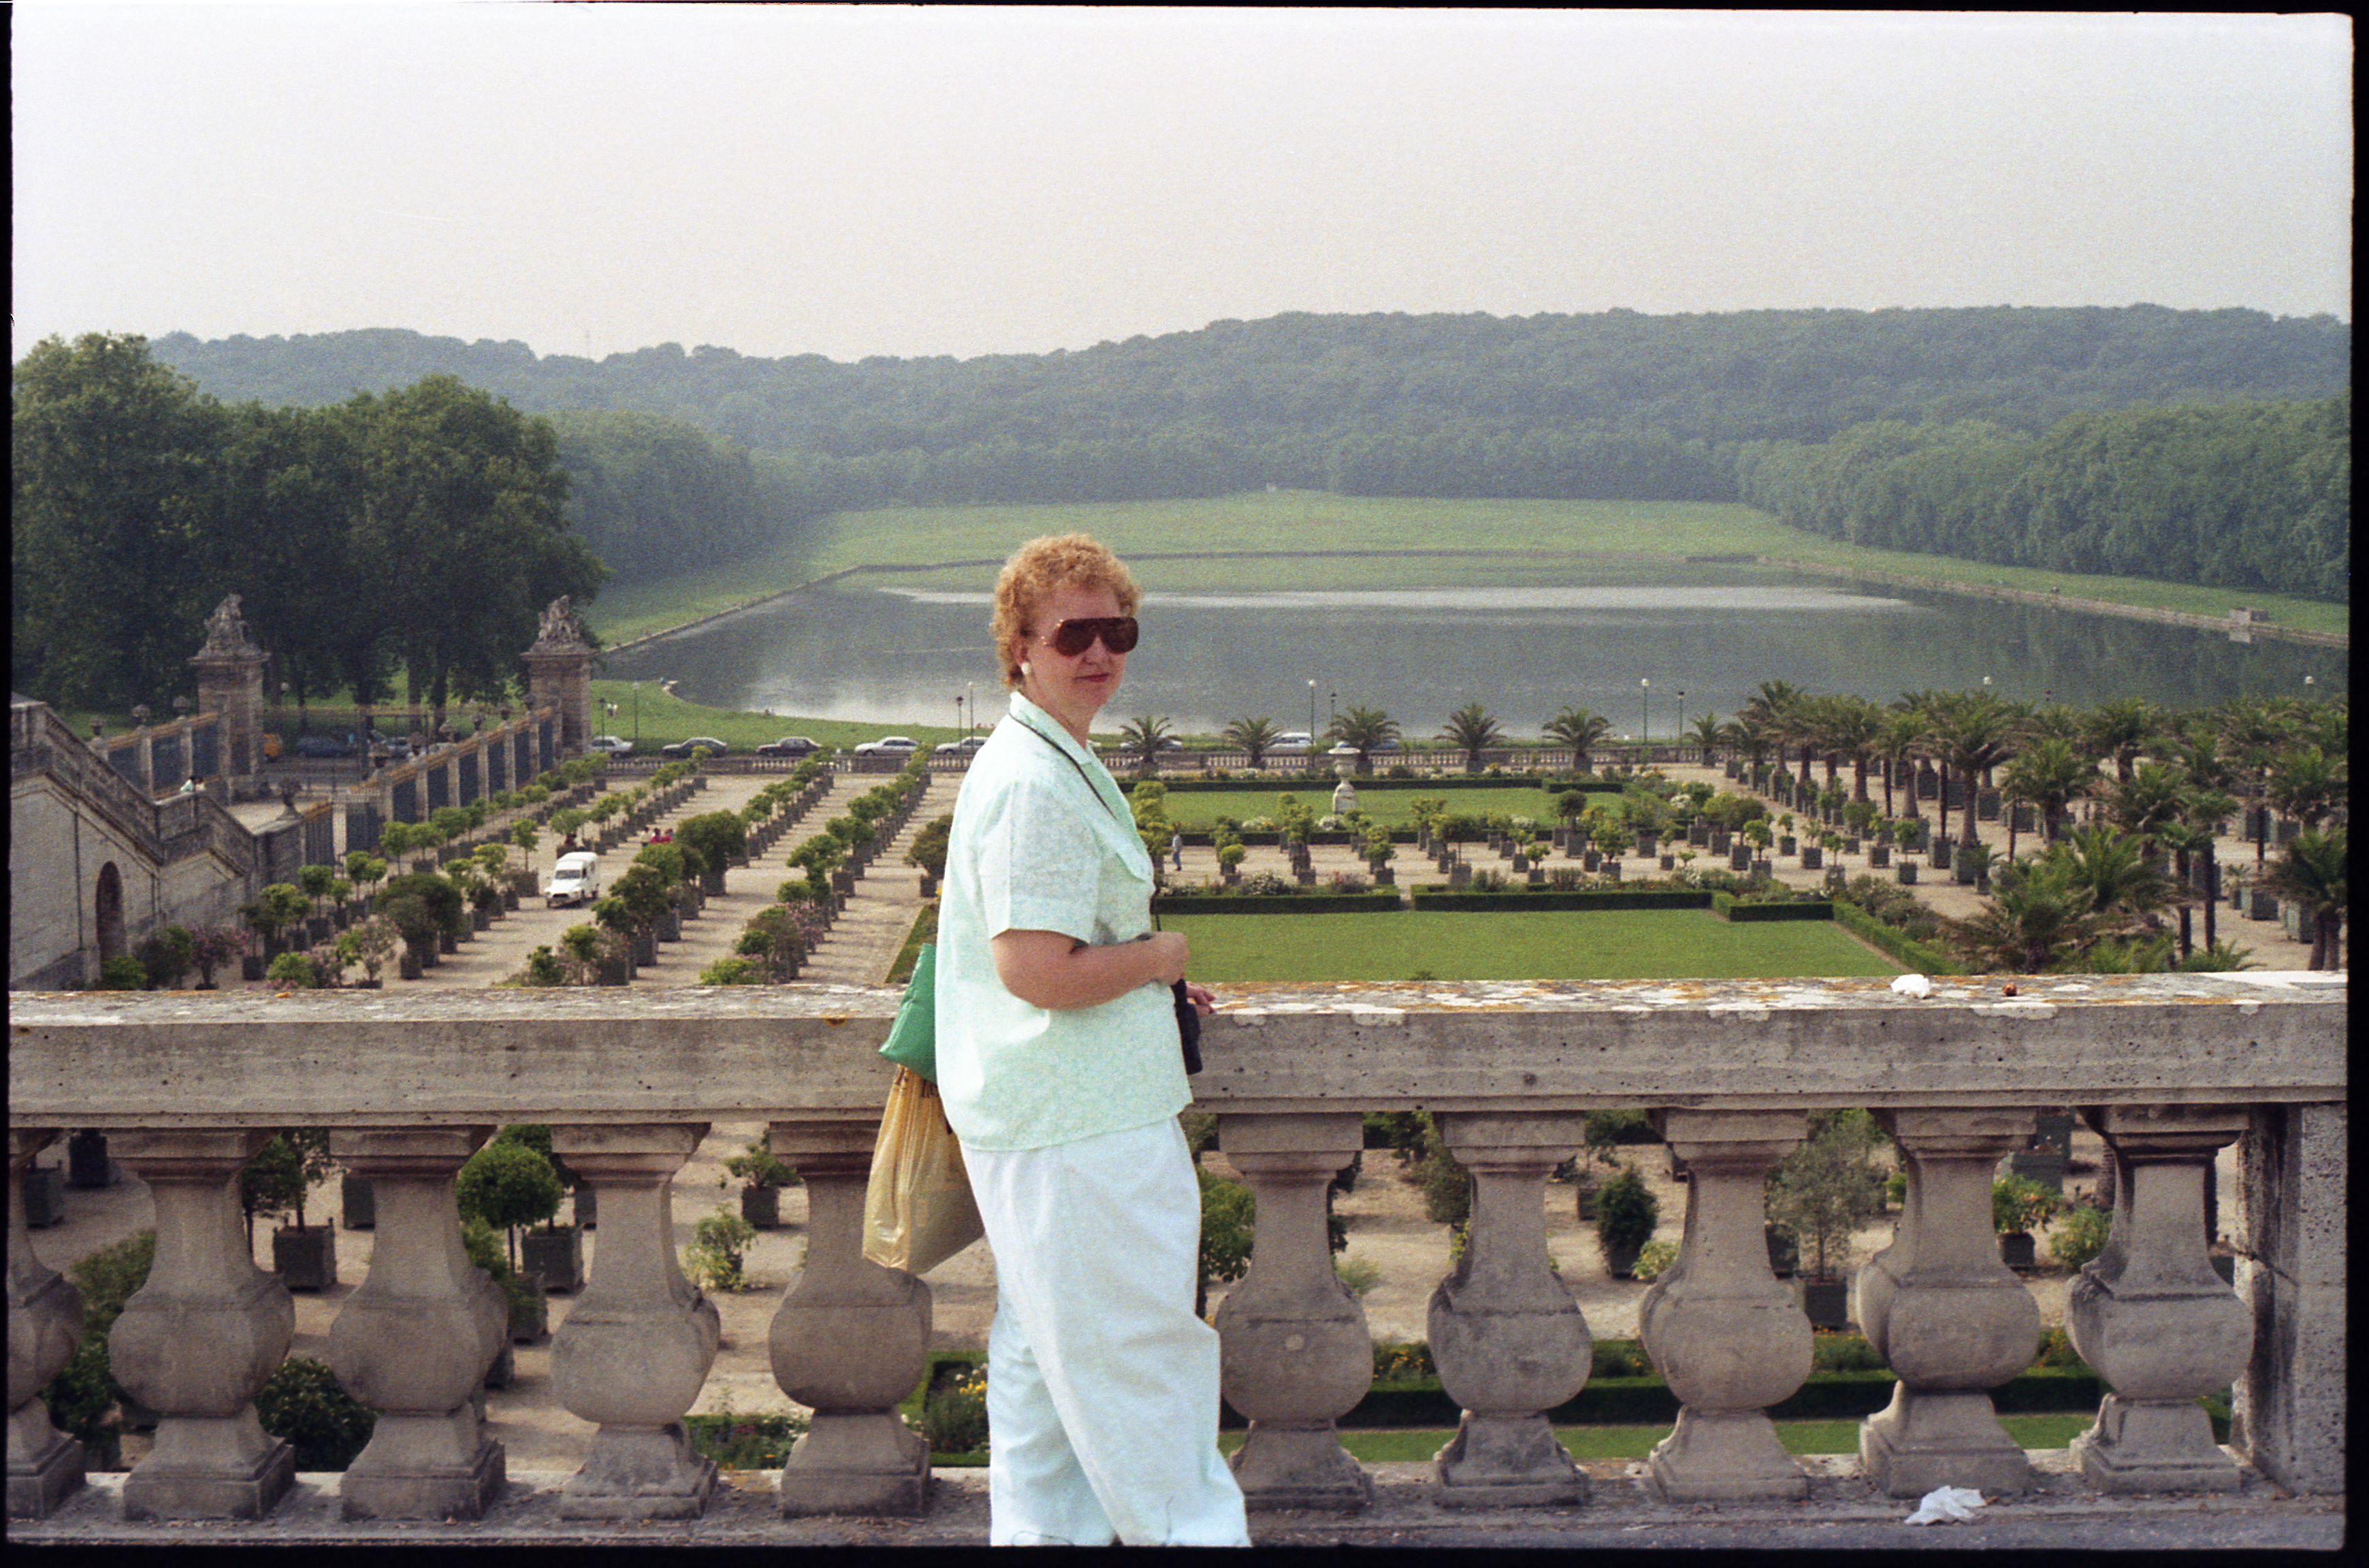 Ann at Versailles